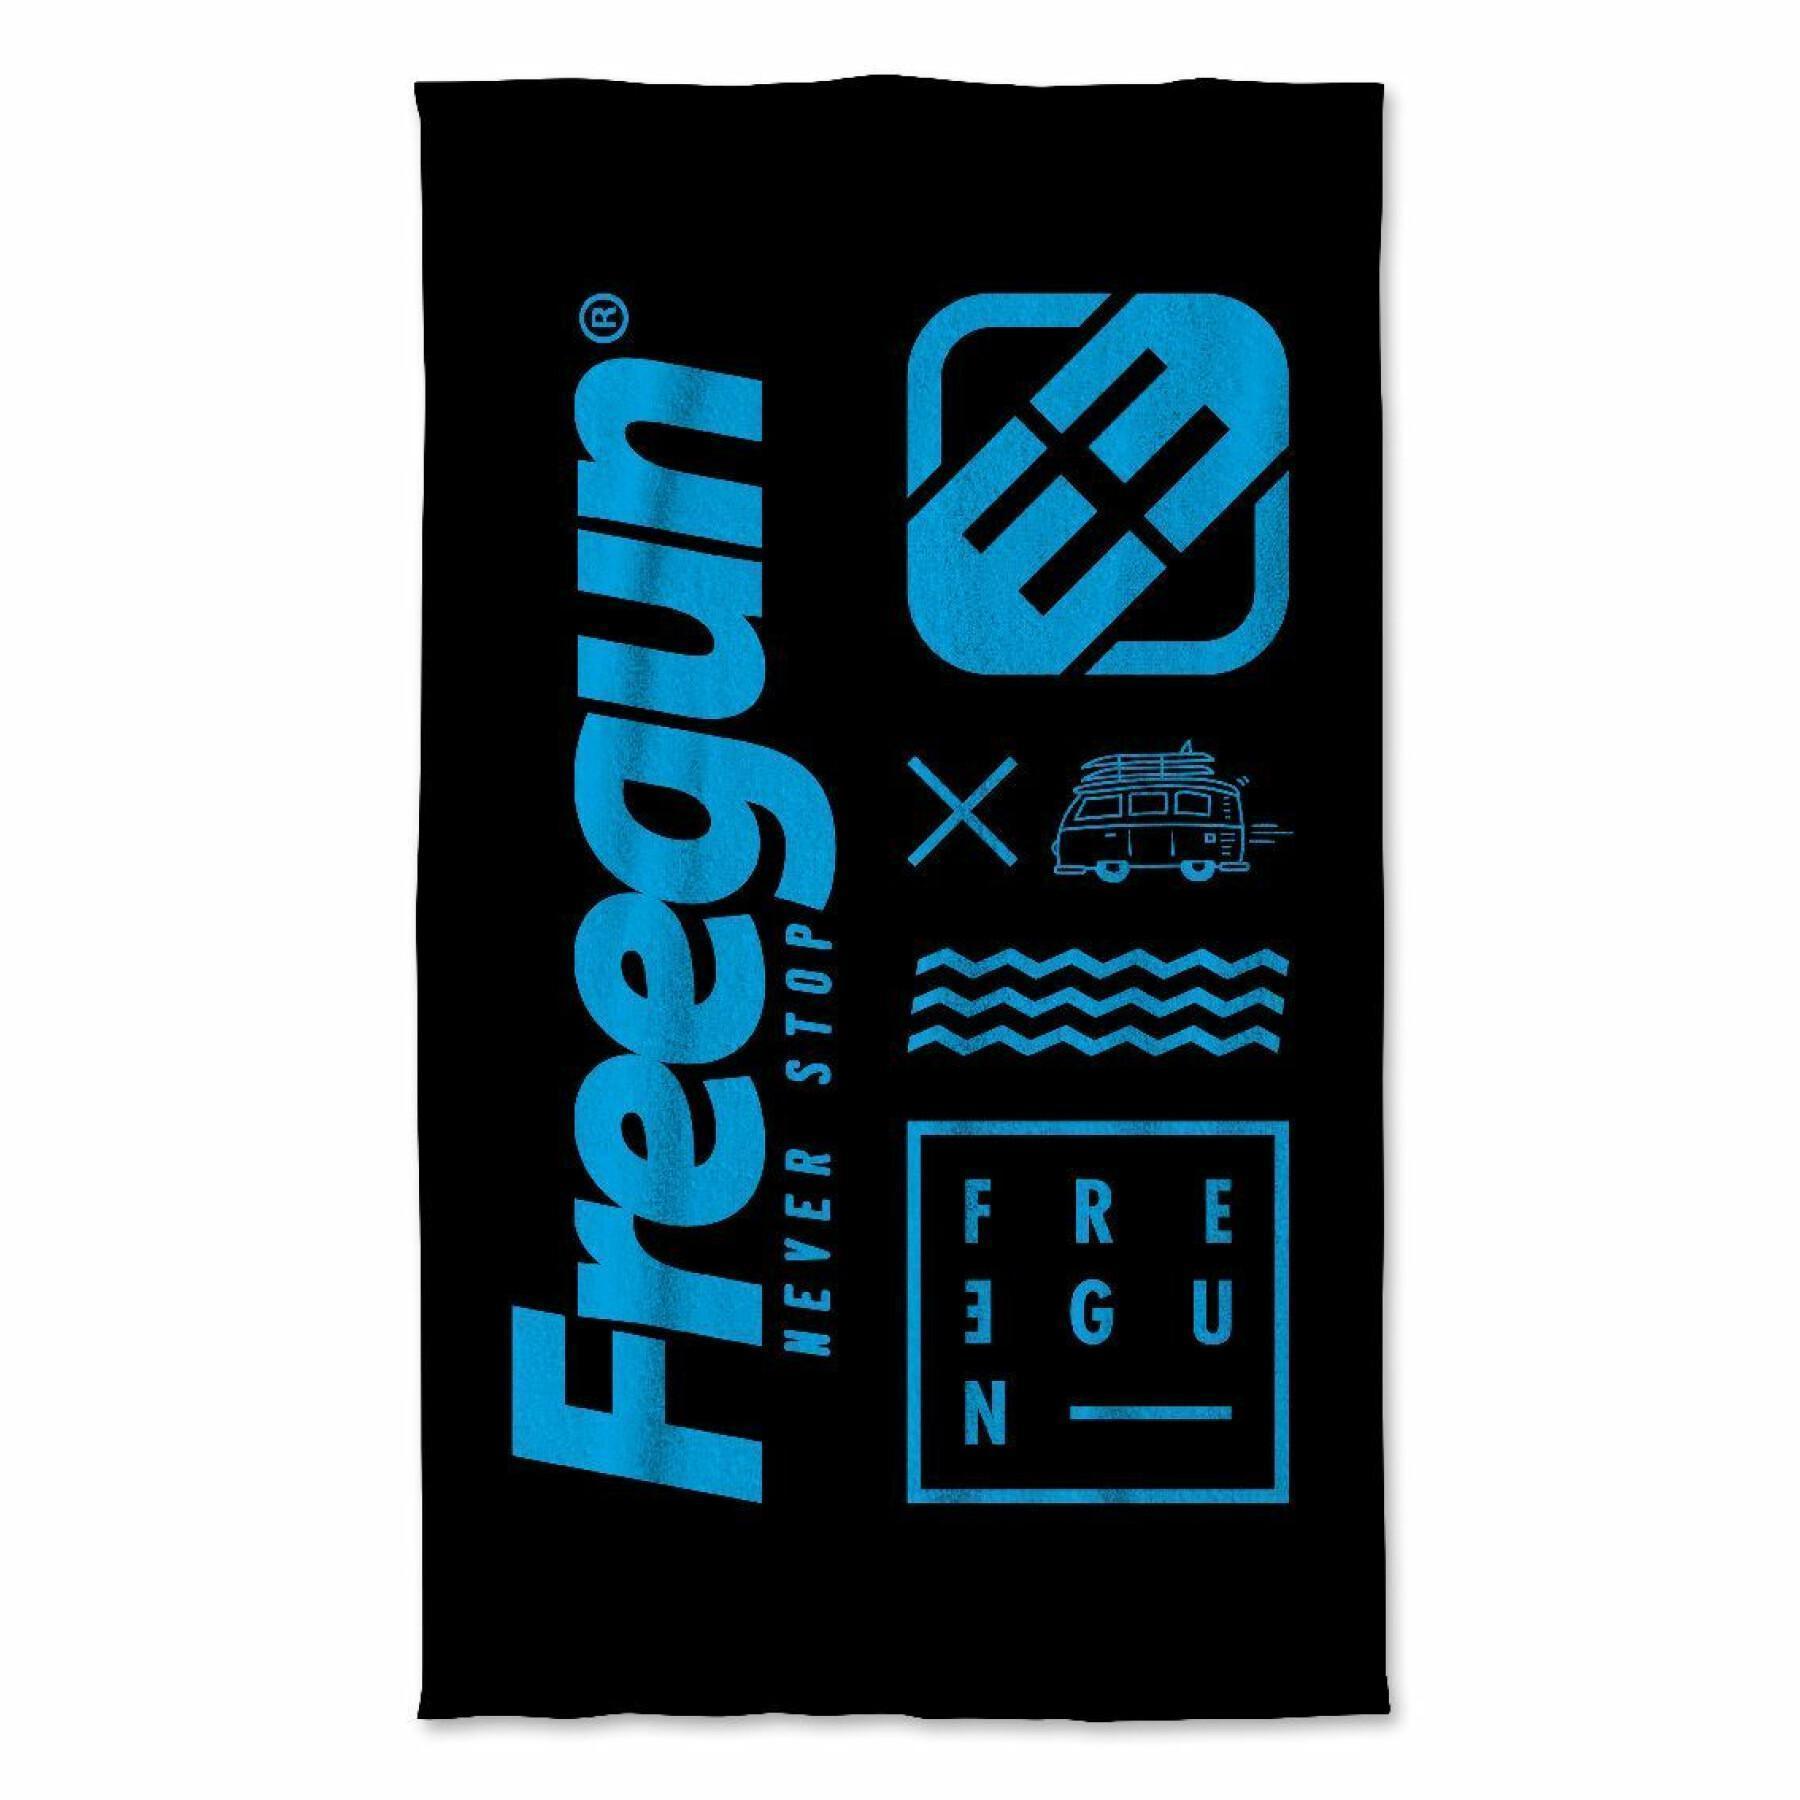 Grande serviette Freegun